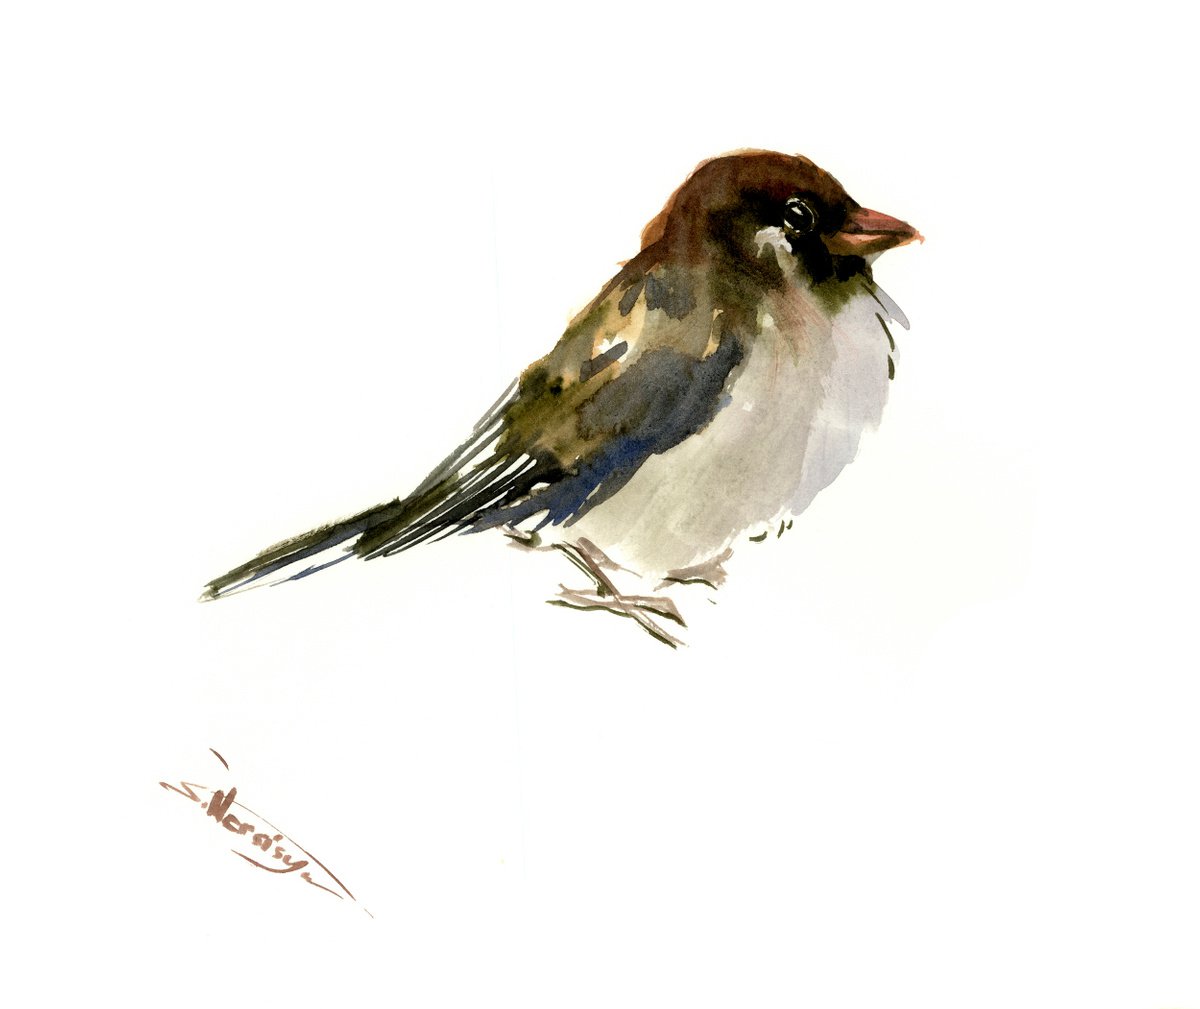 Sparrow, bird painting by Suren Nersisyan